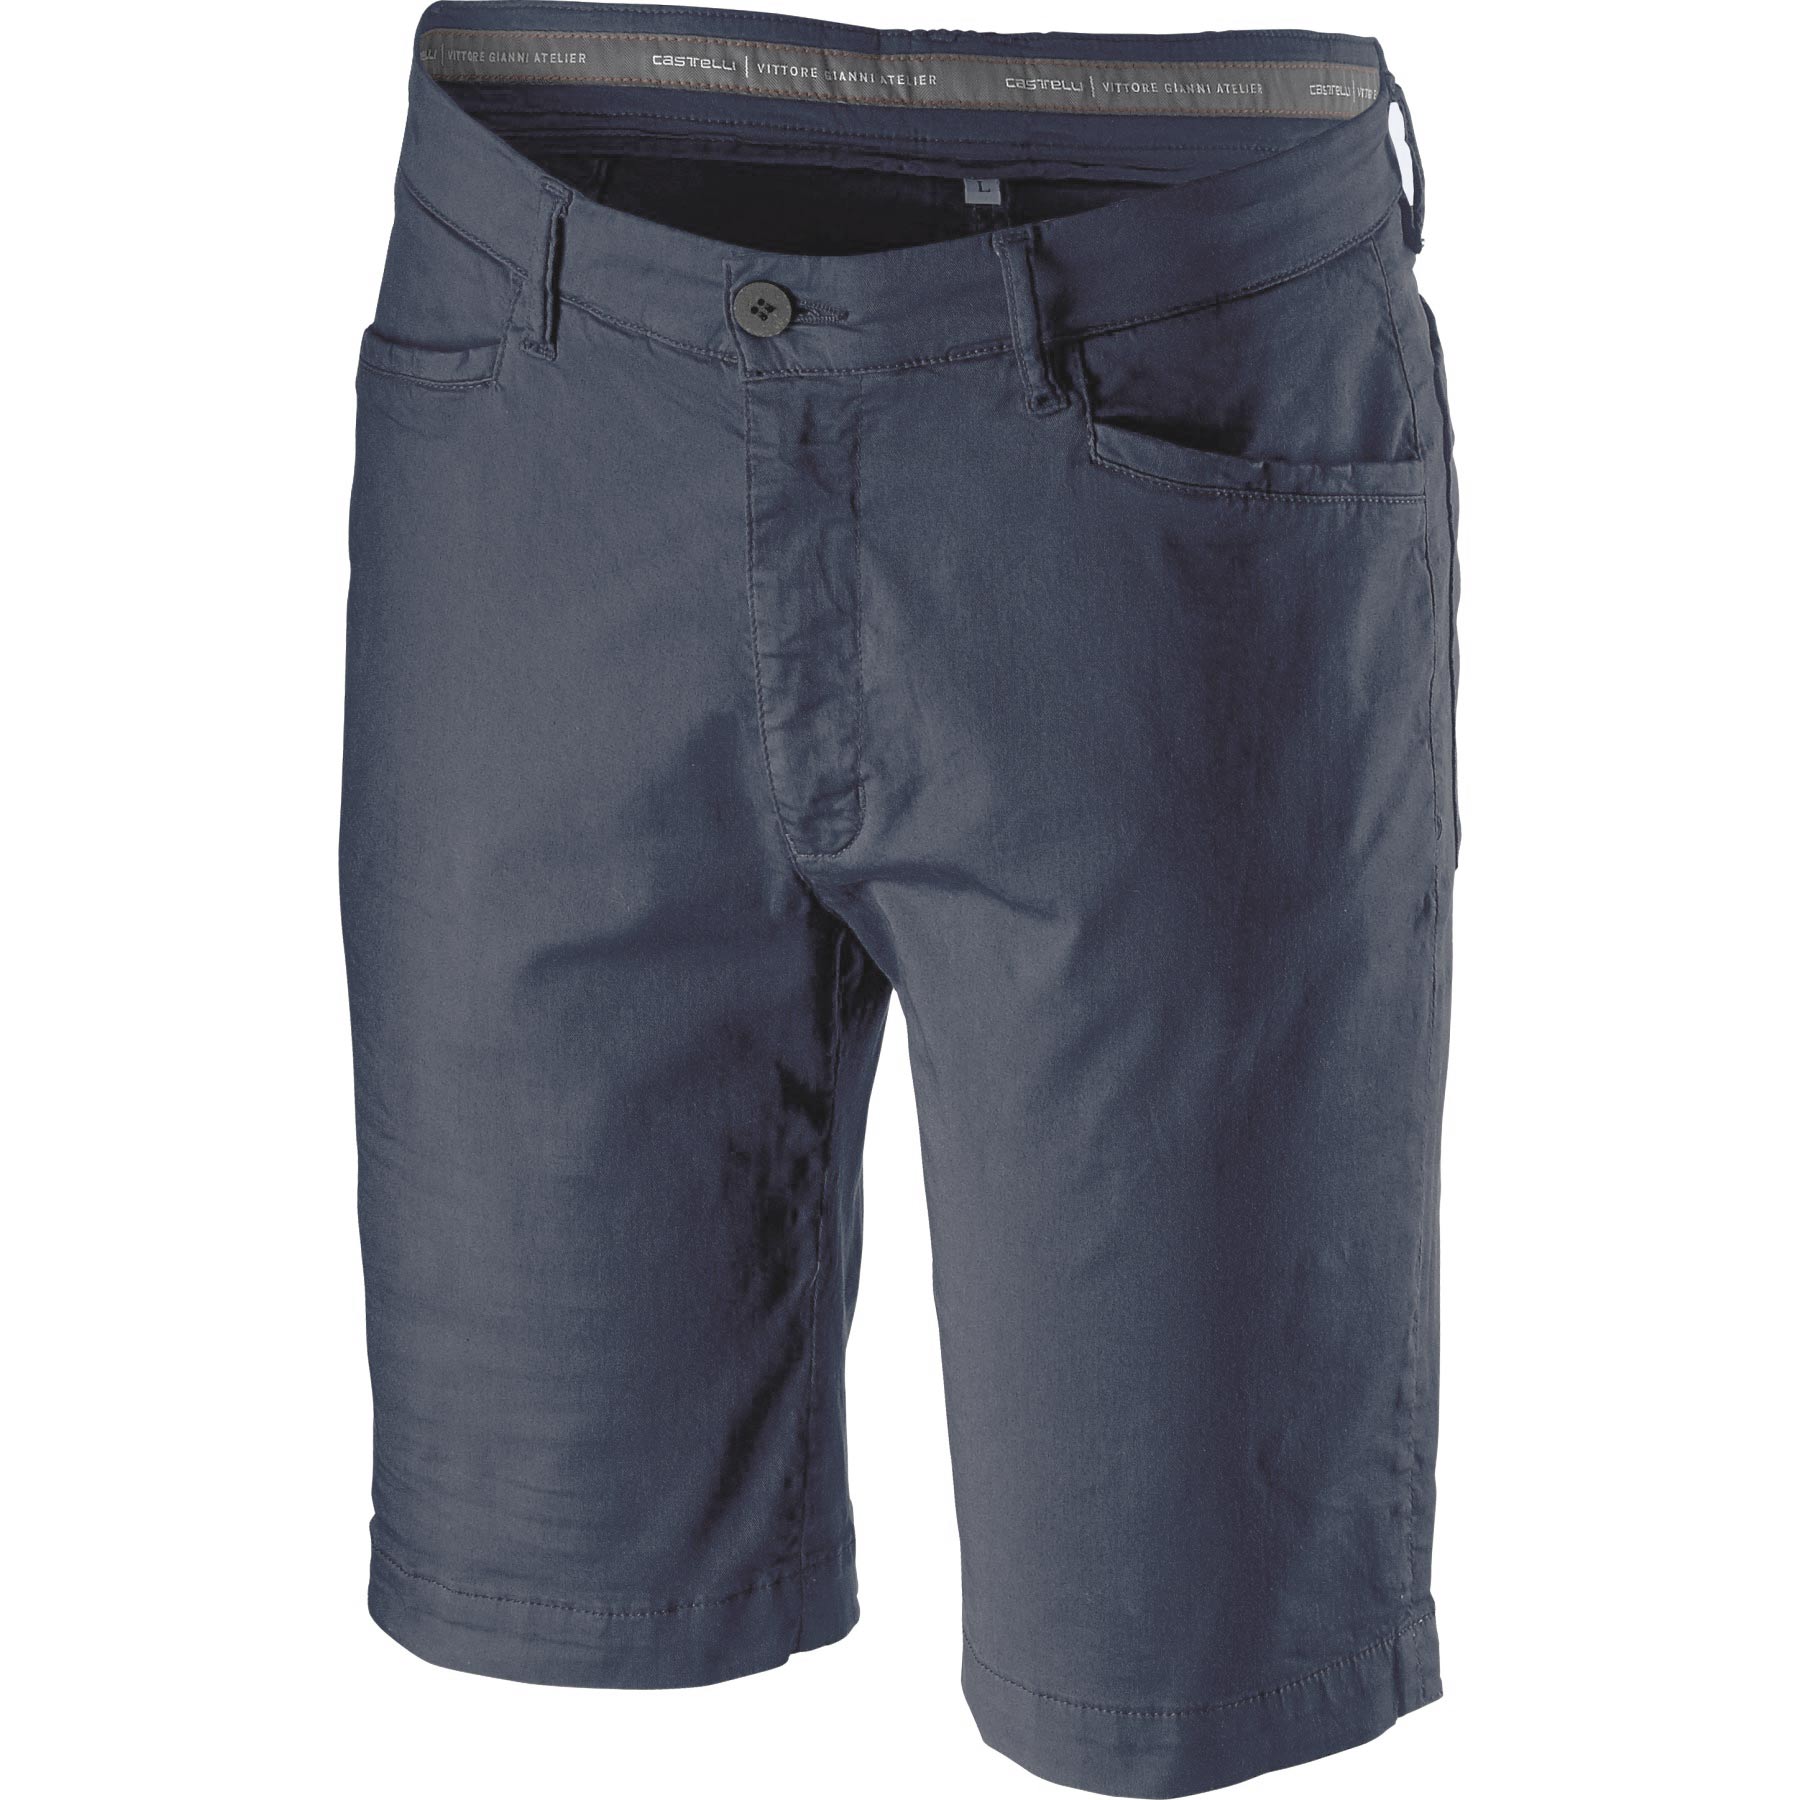 Produktbild von Castelli VG 5 Pocket Shorts - dark infinity blue 041